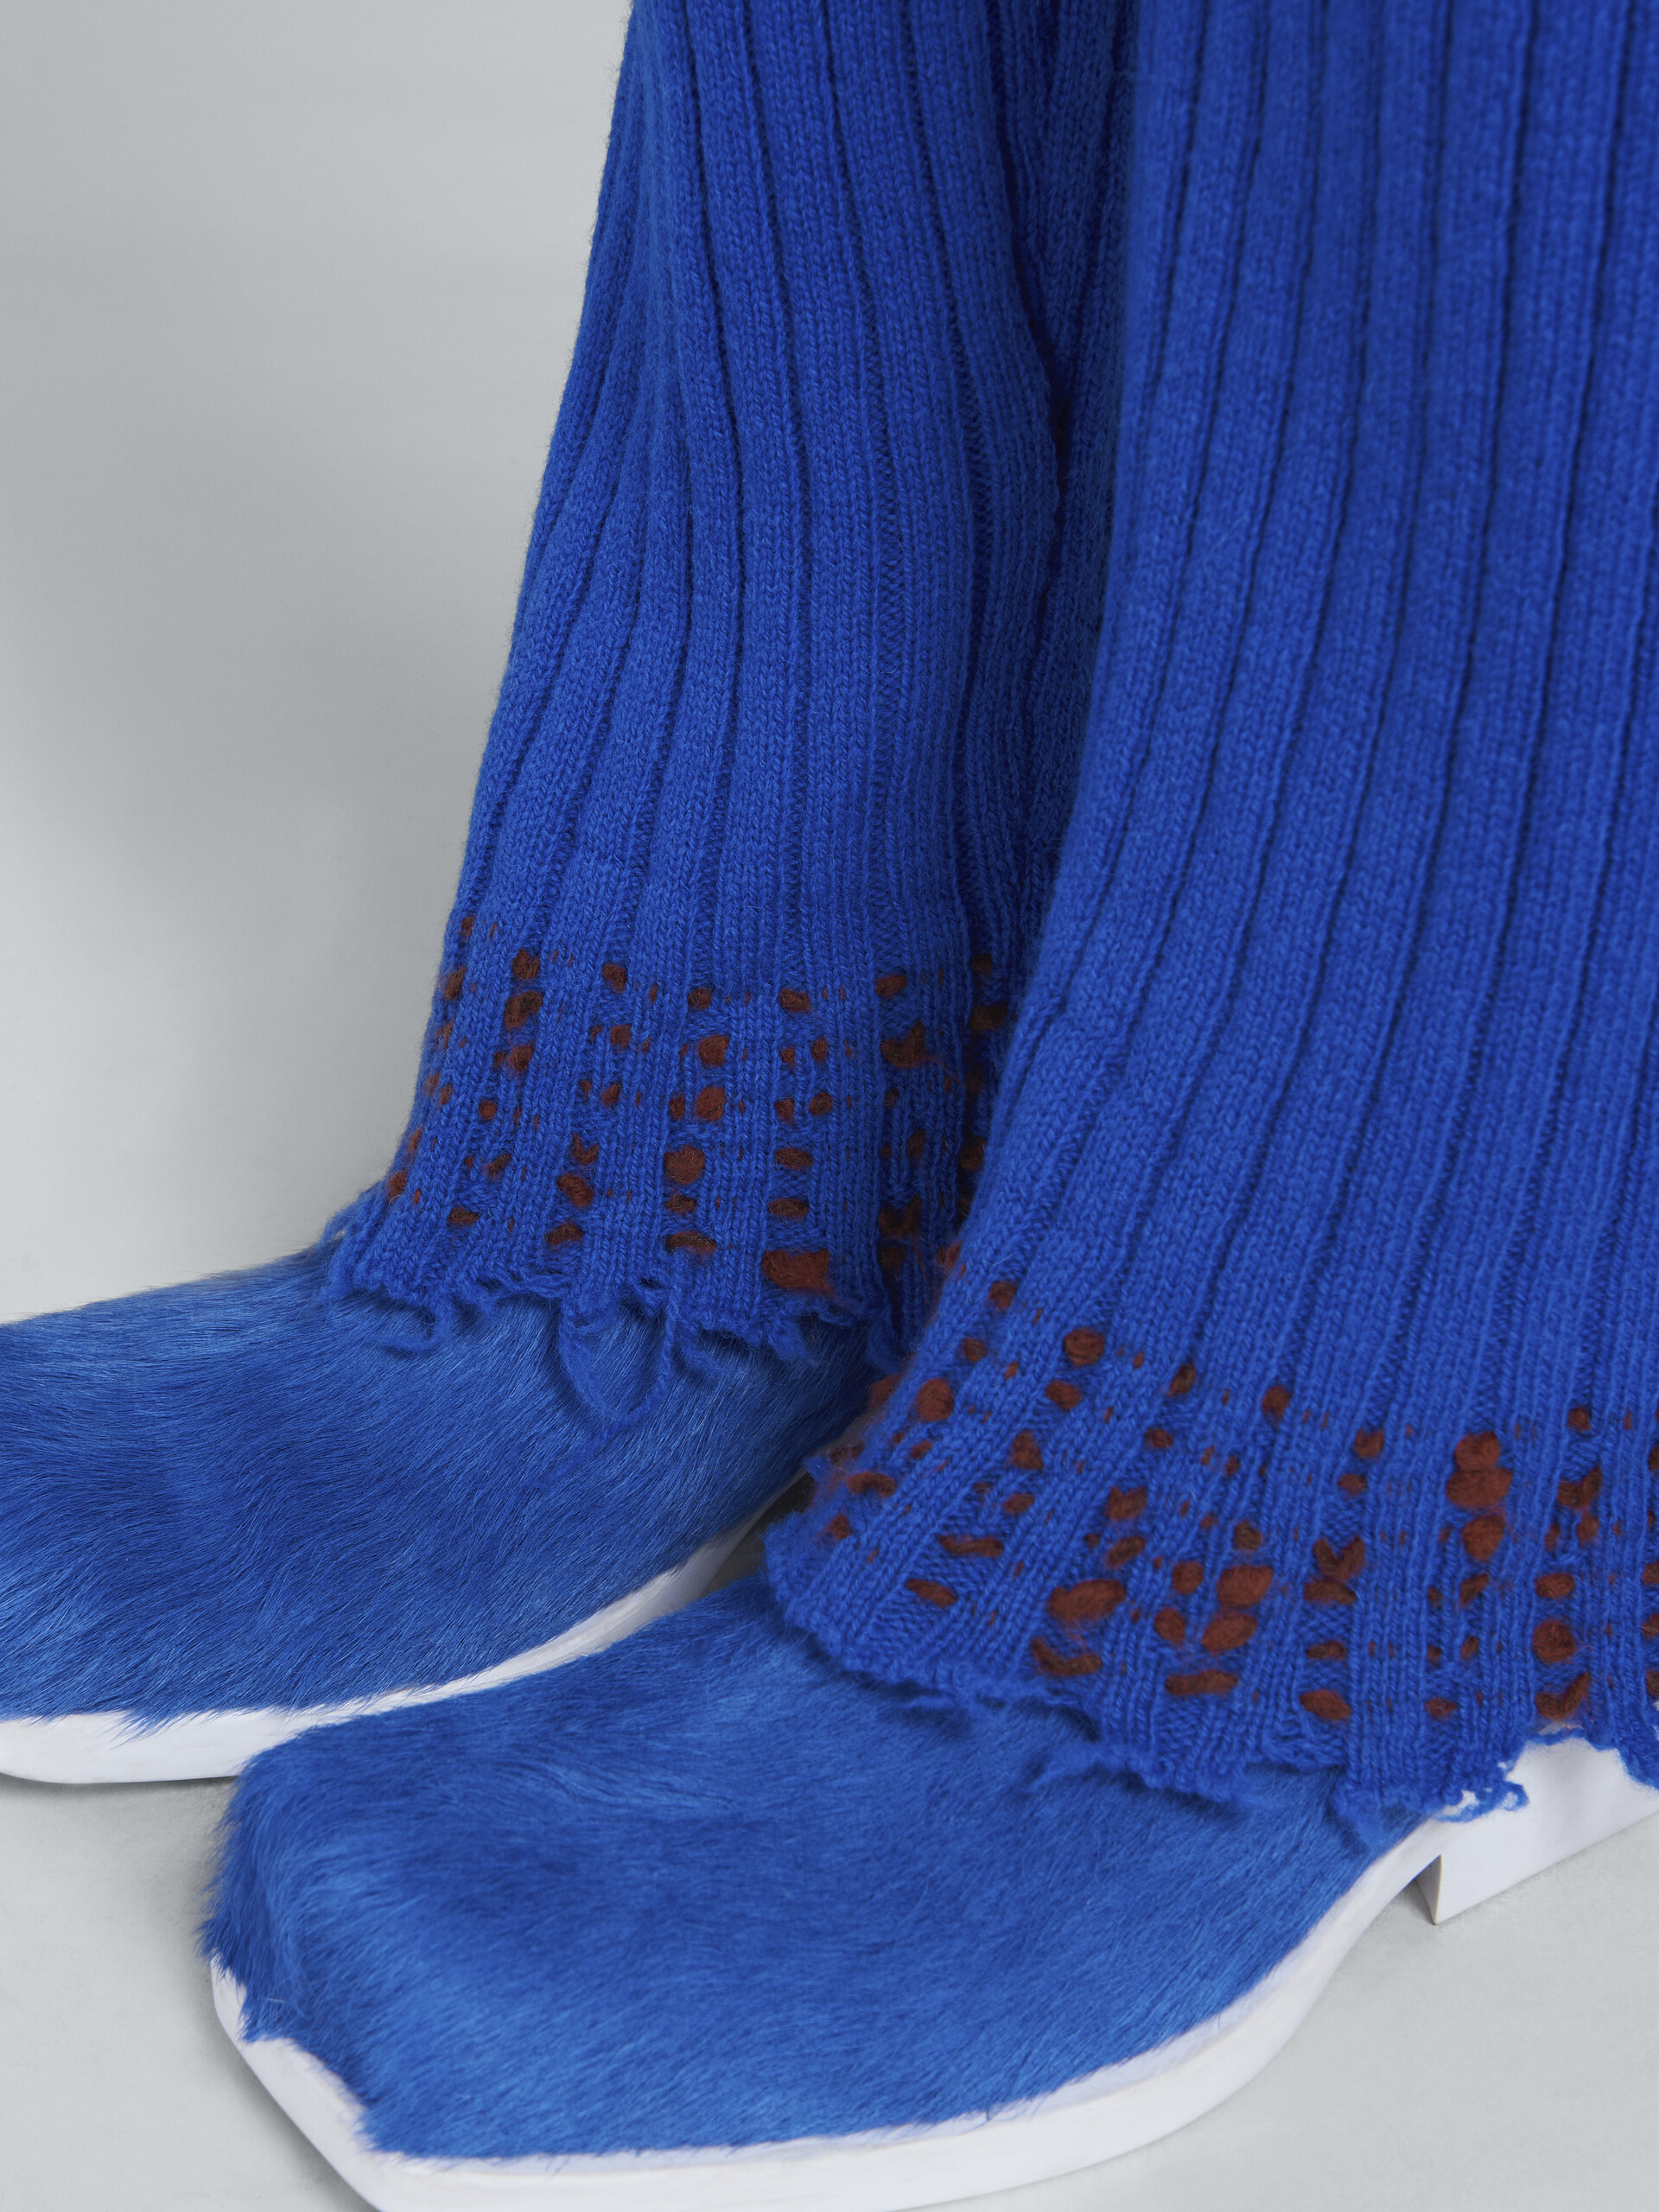 Blue wool knit sweater - Pants - Image 4